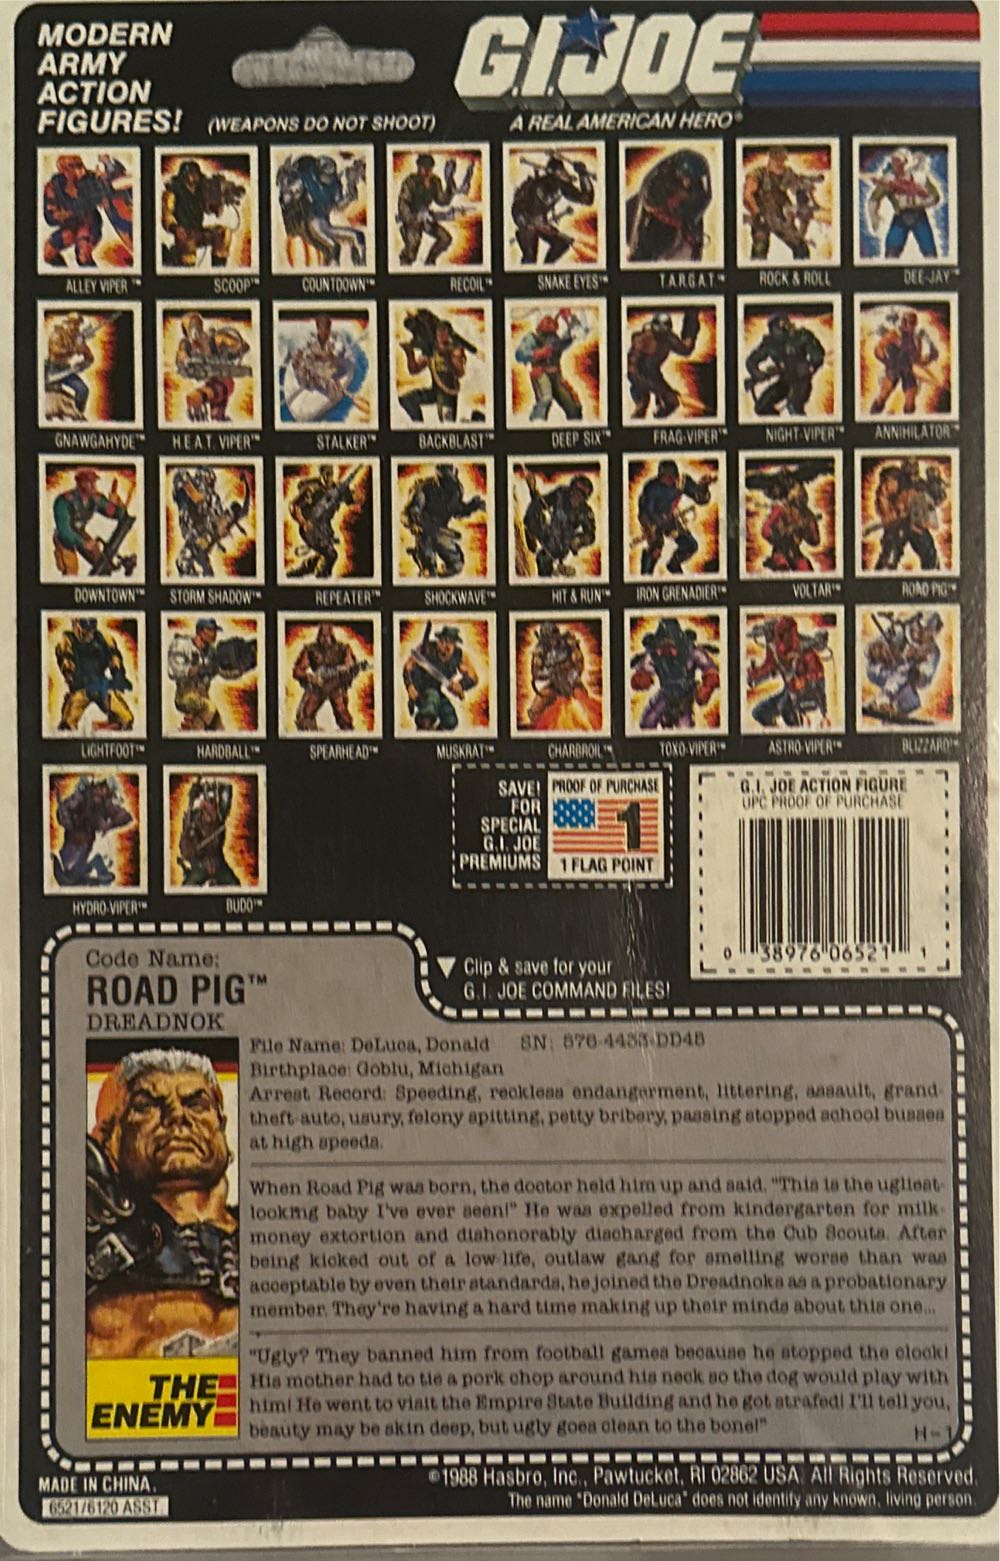 Road Pig - Hasbro (G.I. Joe) action figure collectible [Barcode 038976065211] - Main Image 2